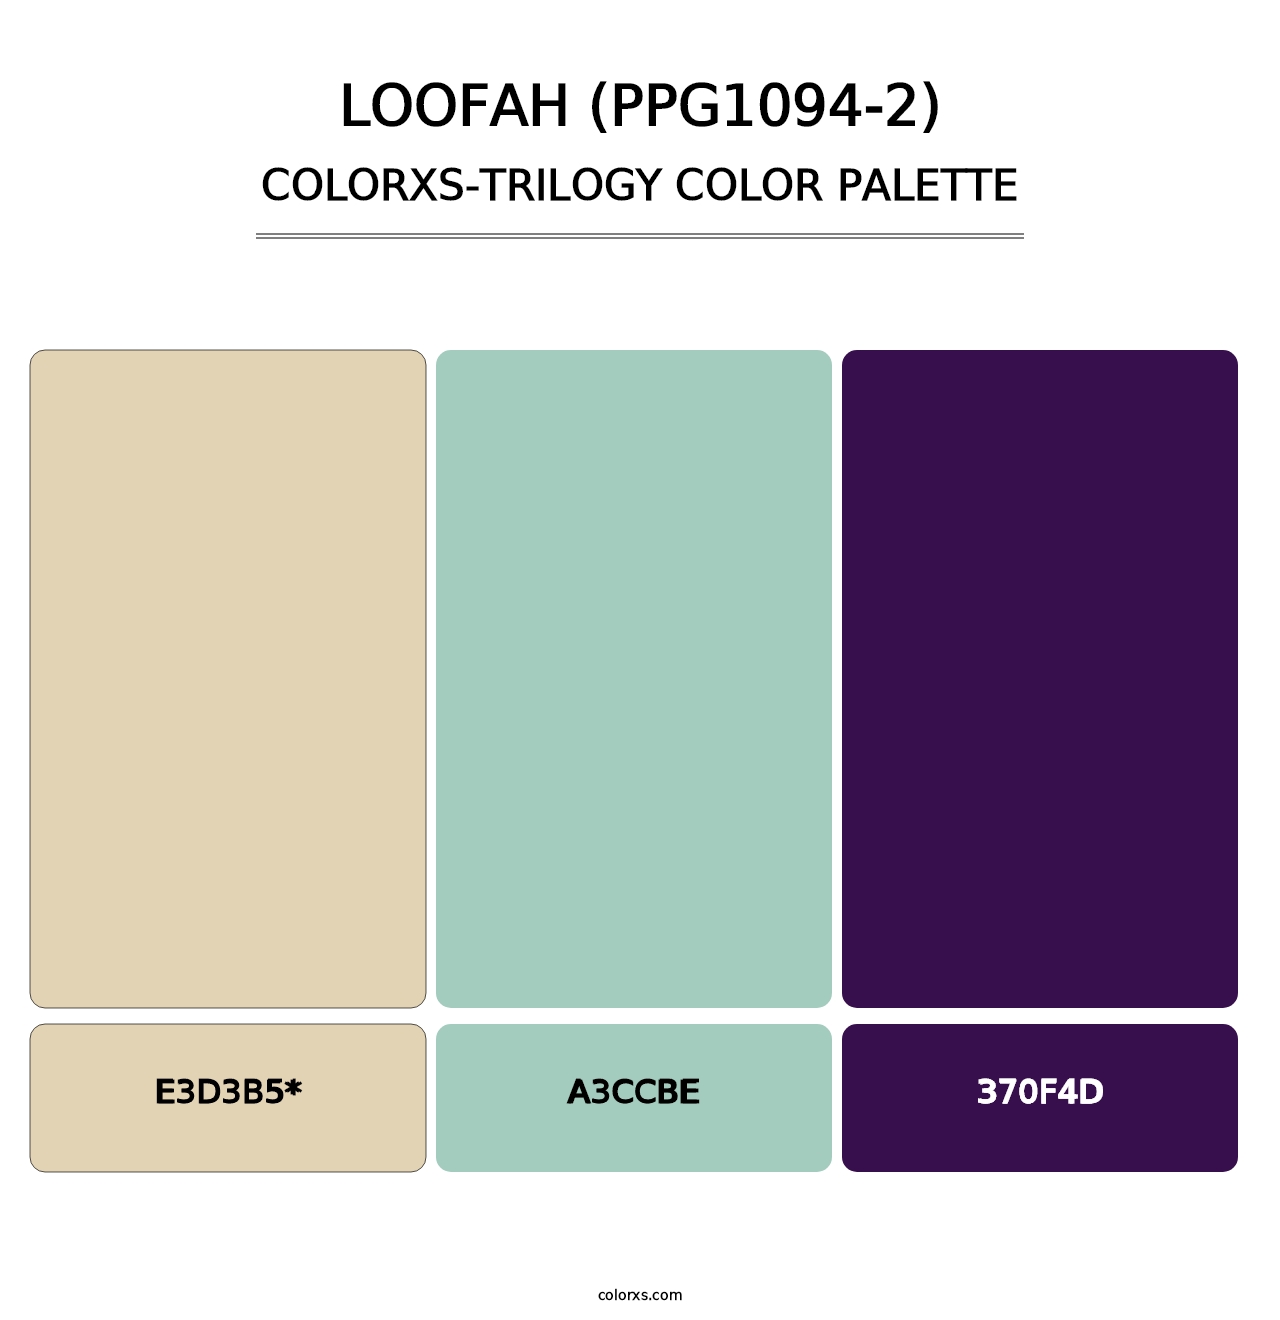 Loofah (PPG1094-2) - Colorxs Trilogy Palette